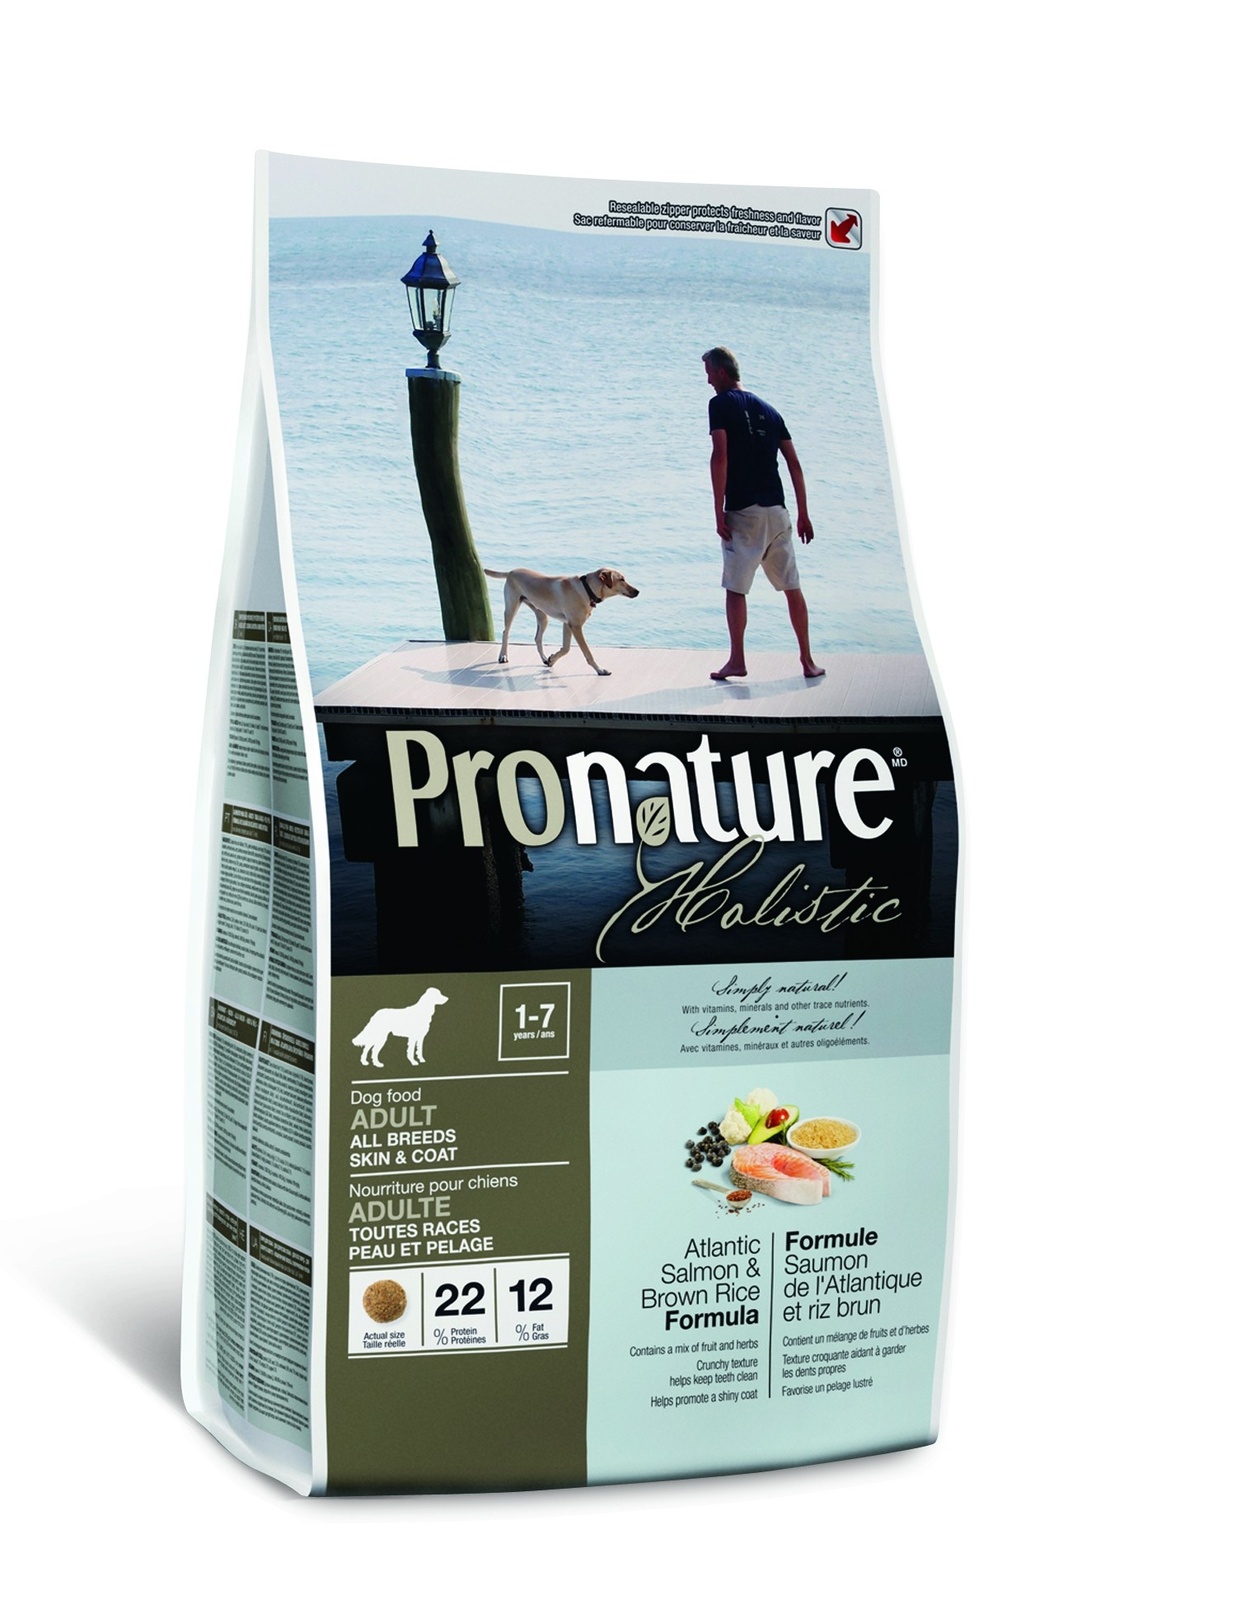 Корм Pronature holistic для взрослых собак: Лосось и рис для здоровья кожи и шерсти (2,72 кг) Корм Pronature holistic для взрослых собак: Лосось и рис для здоровья кожи и шерсти (2,72 кг) - фото 1